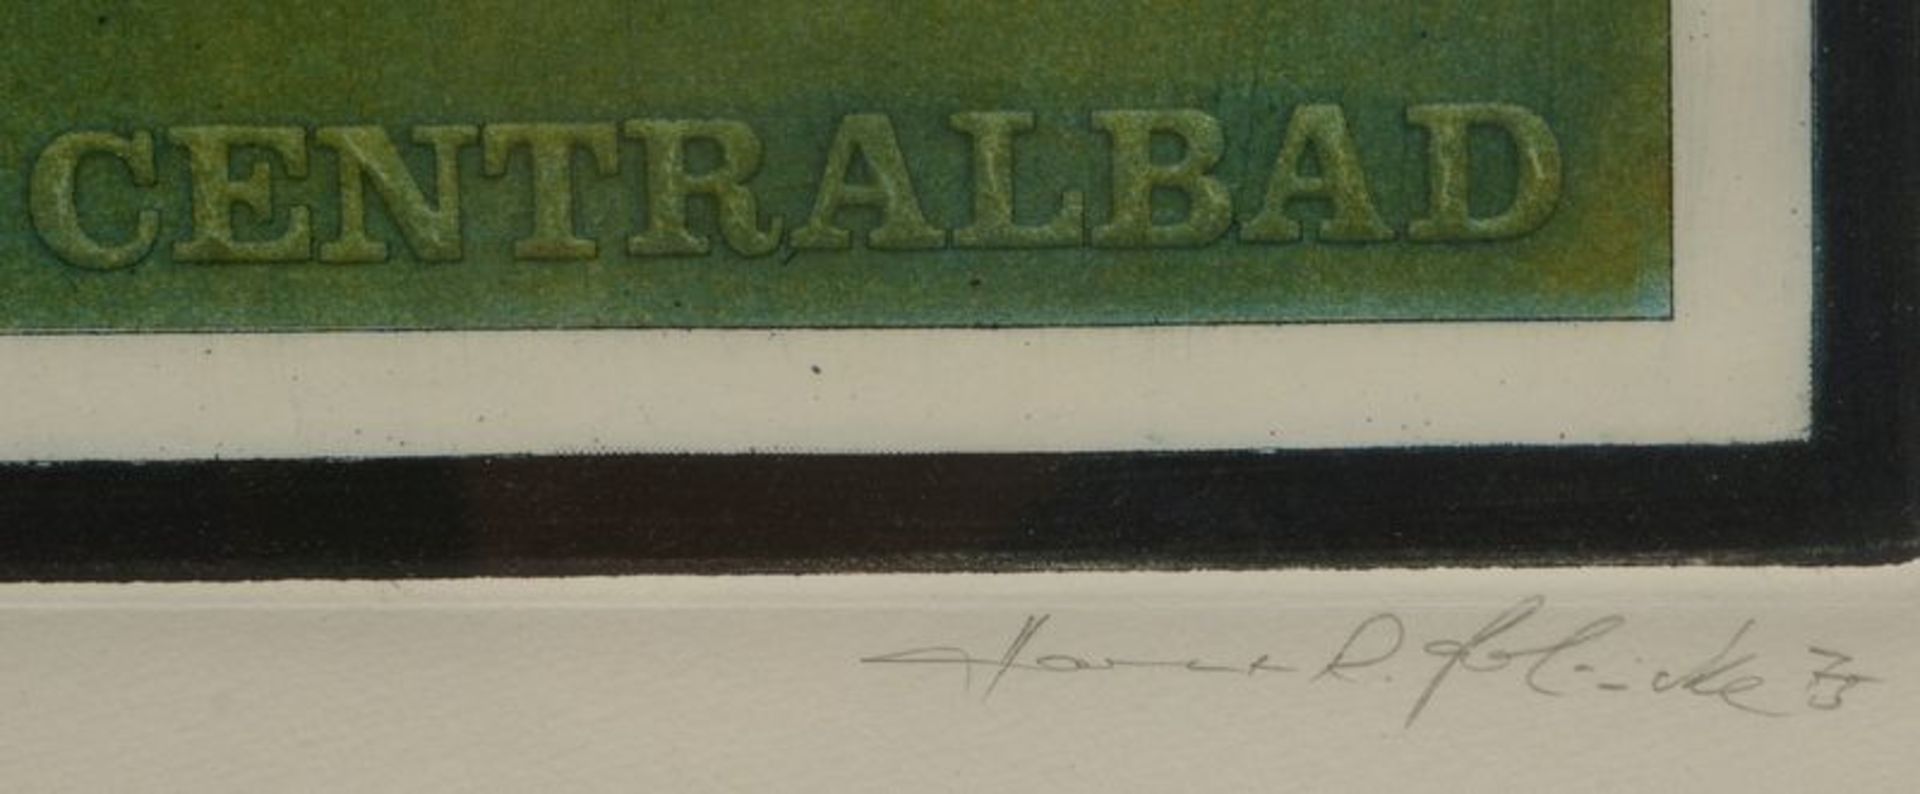 Berlinicke, Hartmut R., kleines Grafik-Konvolut, 3x Farbradierungen, jeweils signiert, hinter Glas - Bild 2 aus 3